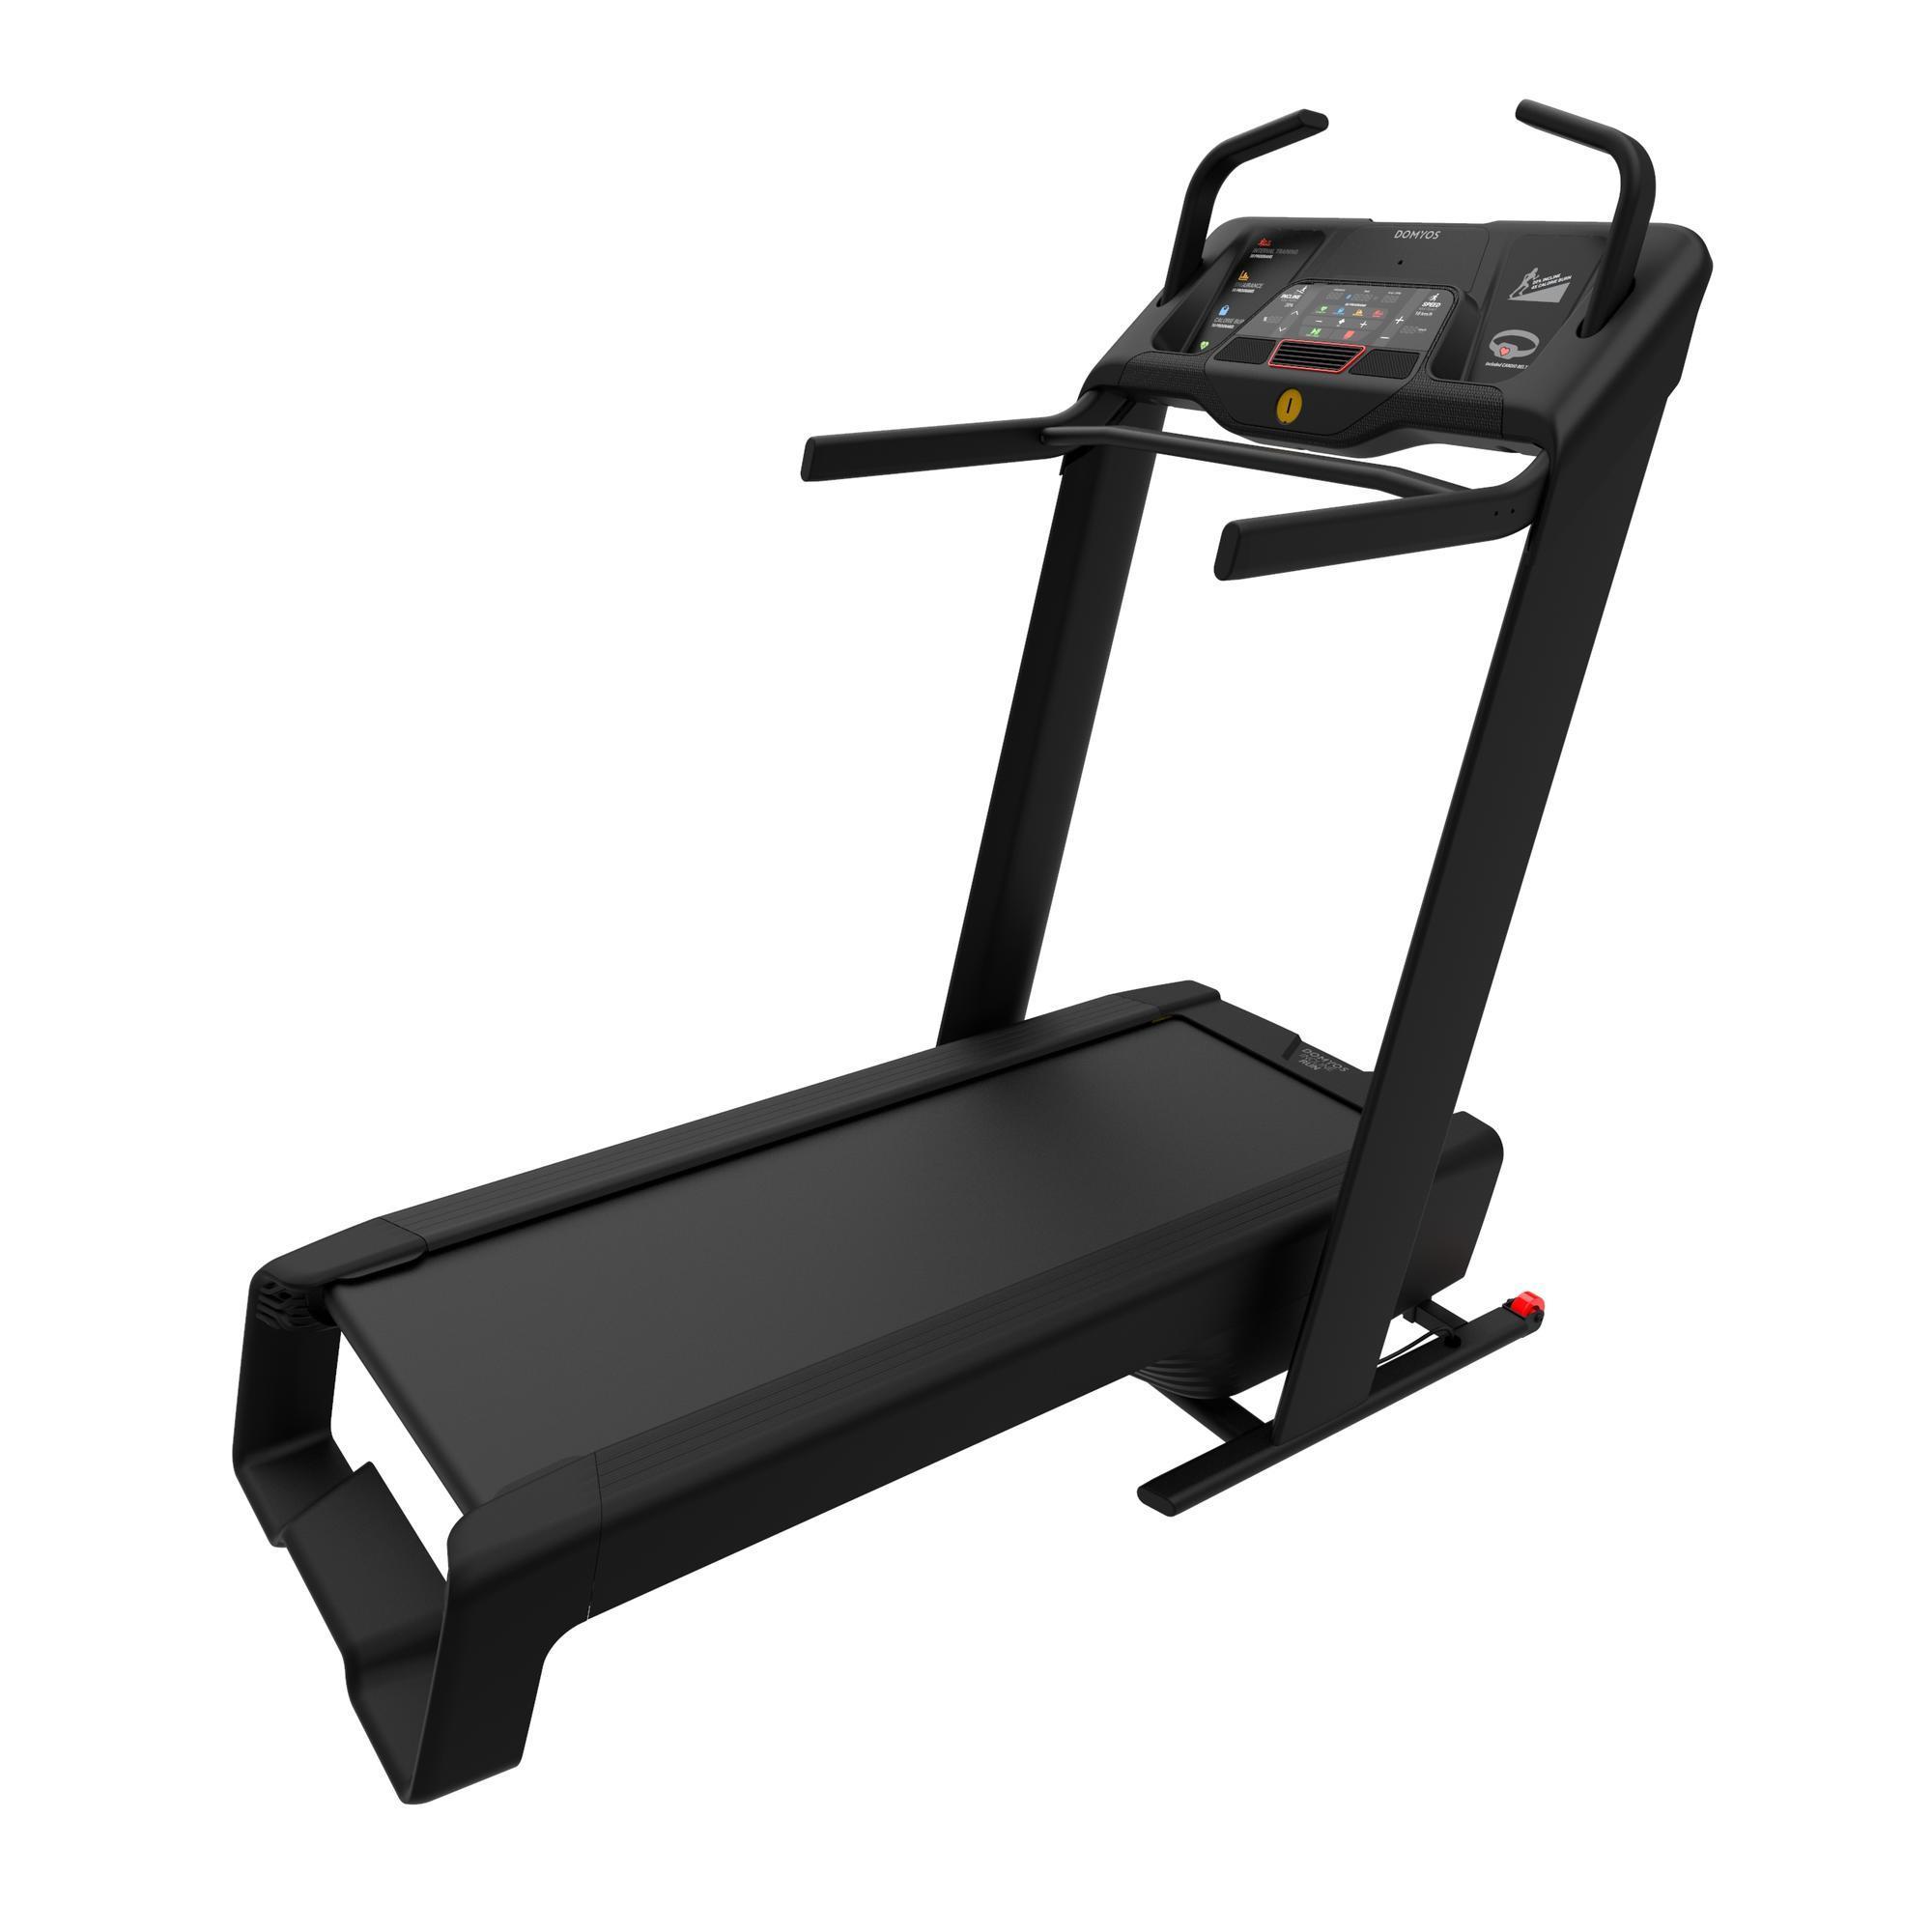 treadmill decathlon uk